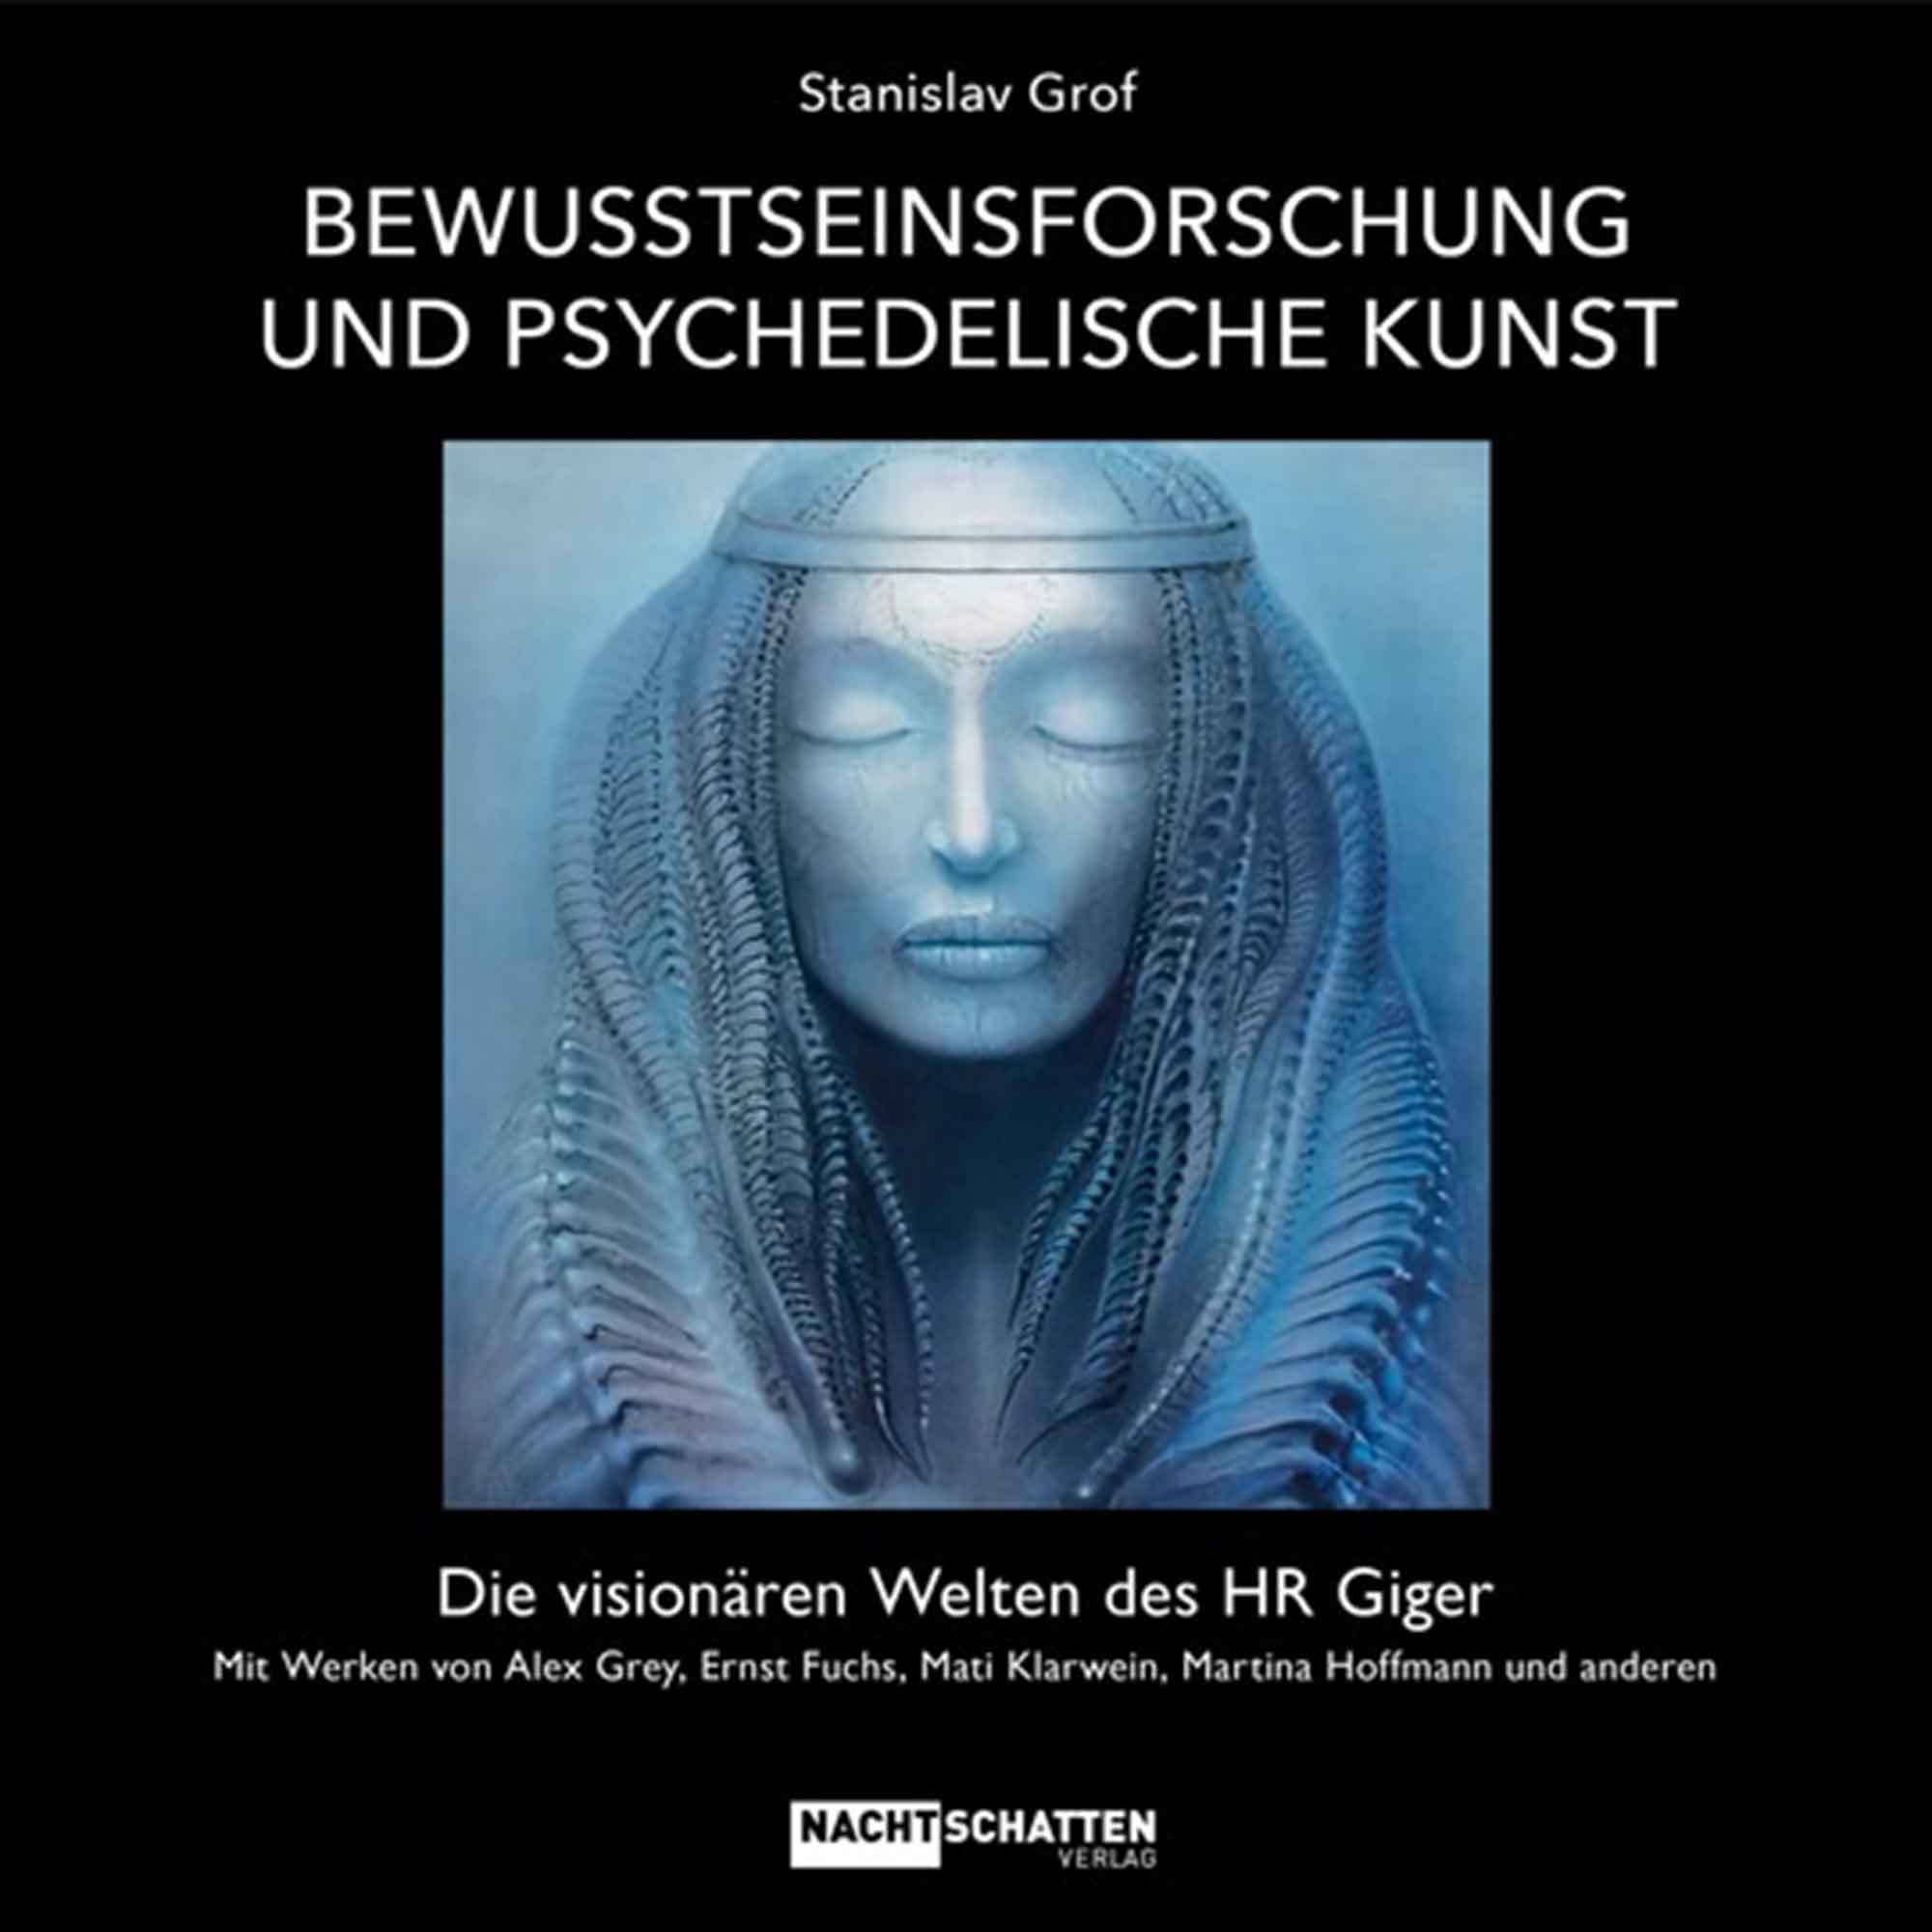 Lesetipps für Gütersloh: Stanislav Grof, »Bewusstseinsforschung und psychedelische Kunst – die visionären Welten des HR Giger«